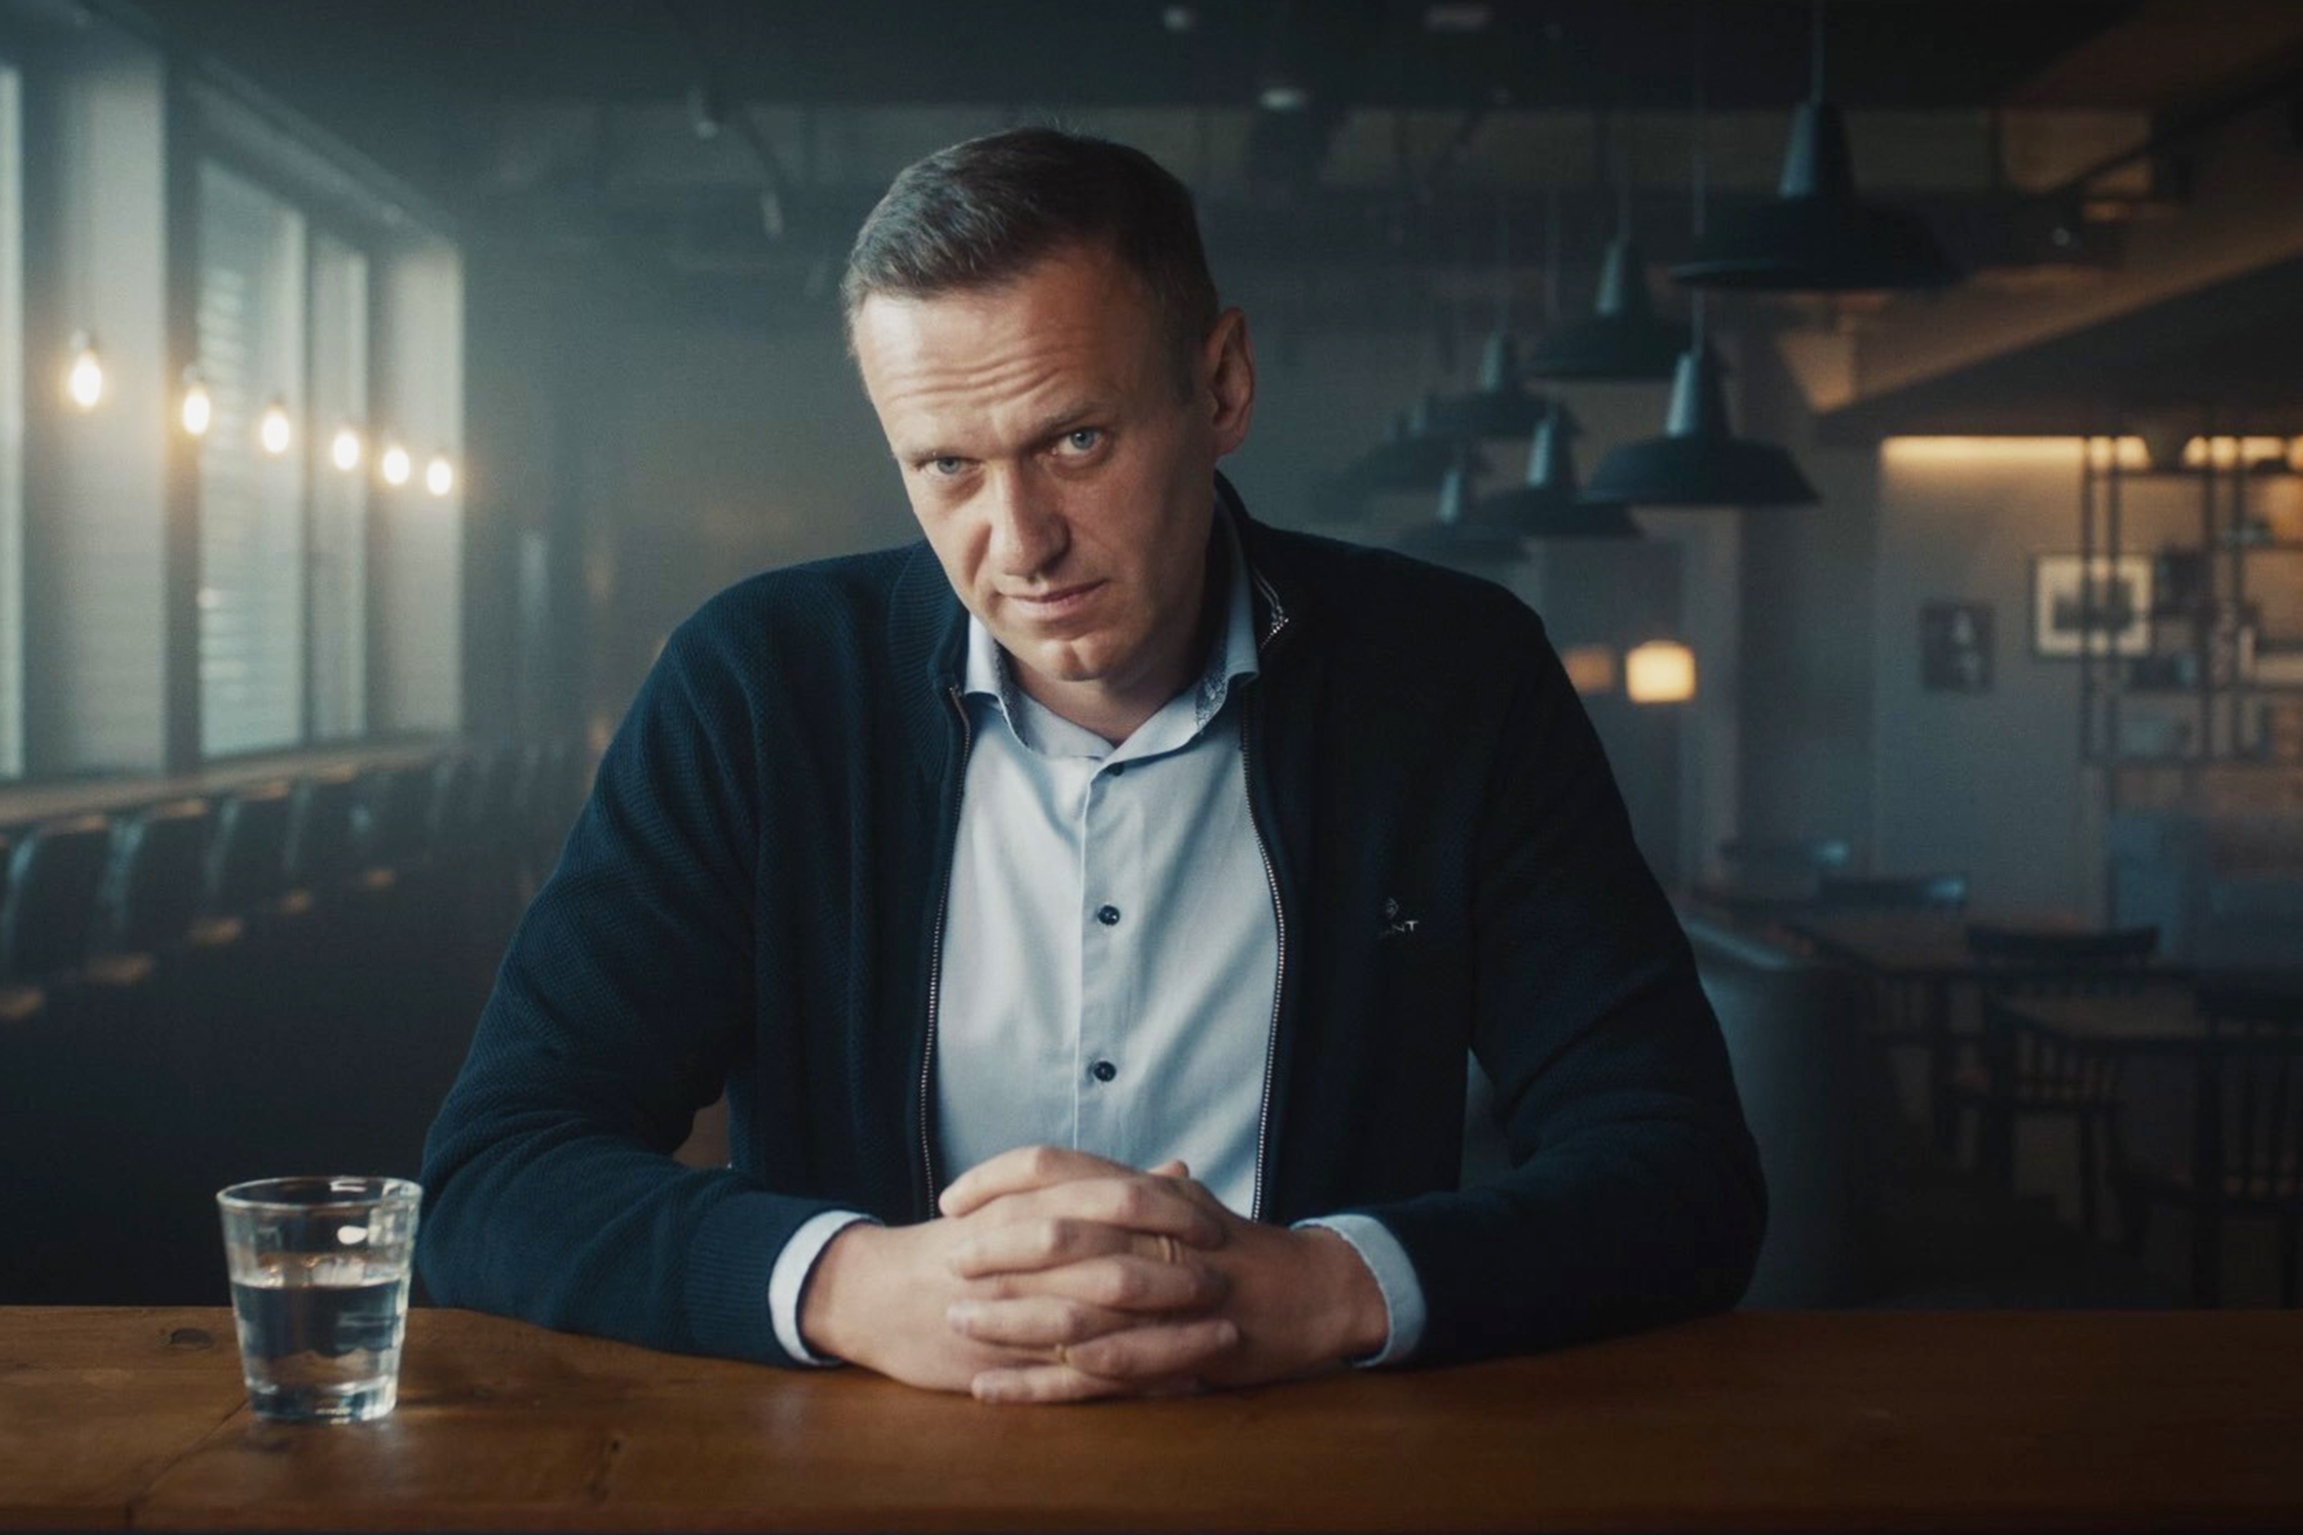 Nawalny – Gift hinterlässt immer eine Spur Interview mit dem Vladimir Putins gefährlichstem Gegner: Alexei NawalnyCopyright: SRF/2022 Cable News Network, Inc.